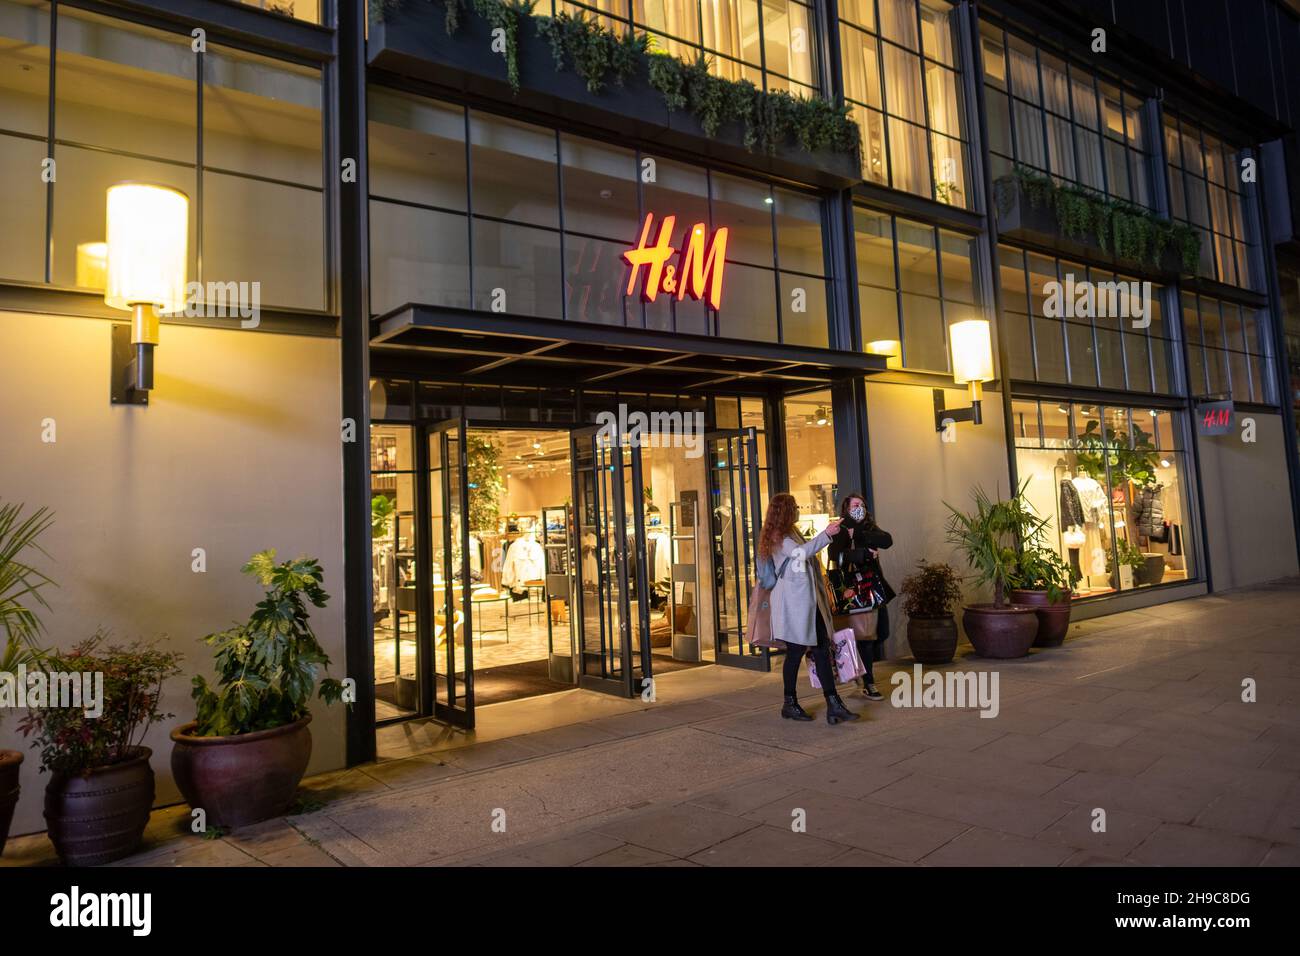 Londra - 2021 dicembre: Negozio H&M a Hammersmith. Un rivenditore di moda britannico Foto Stock